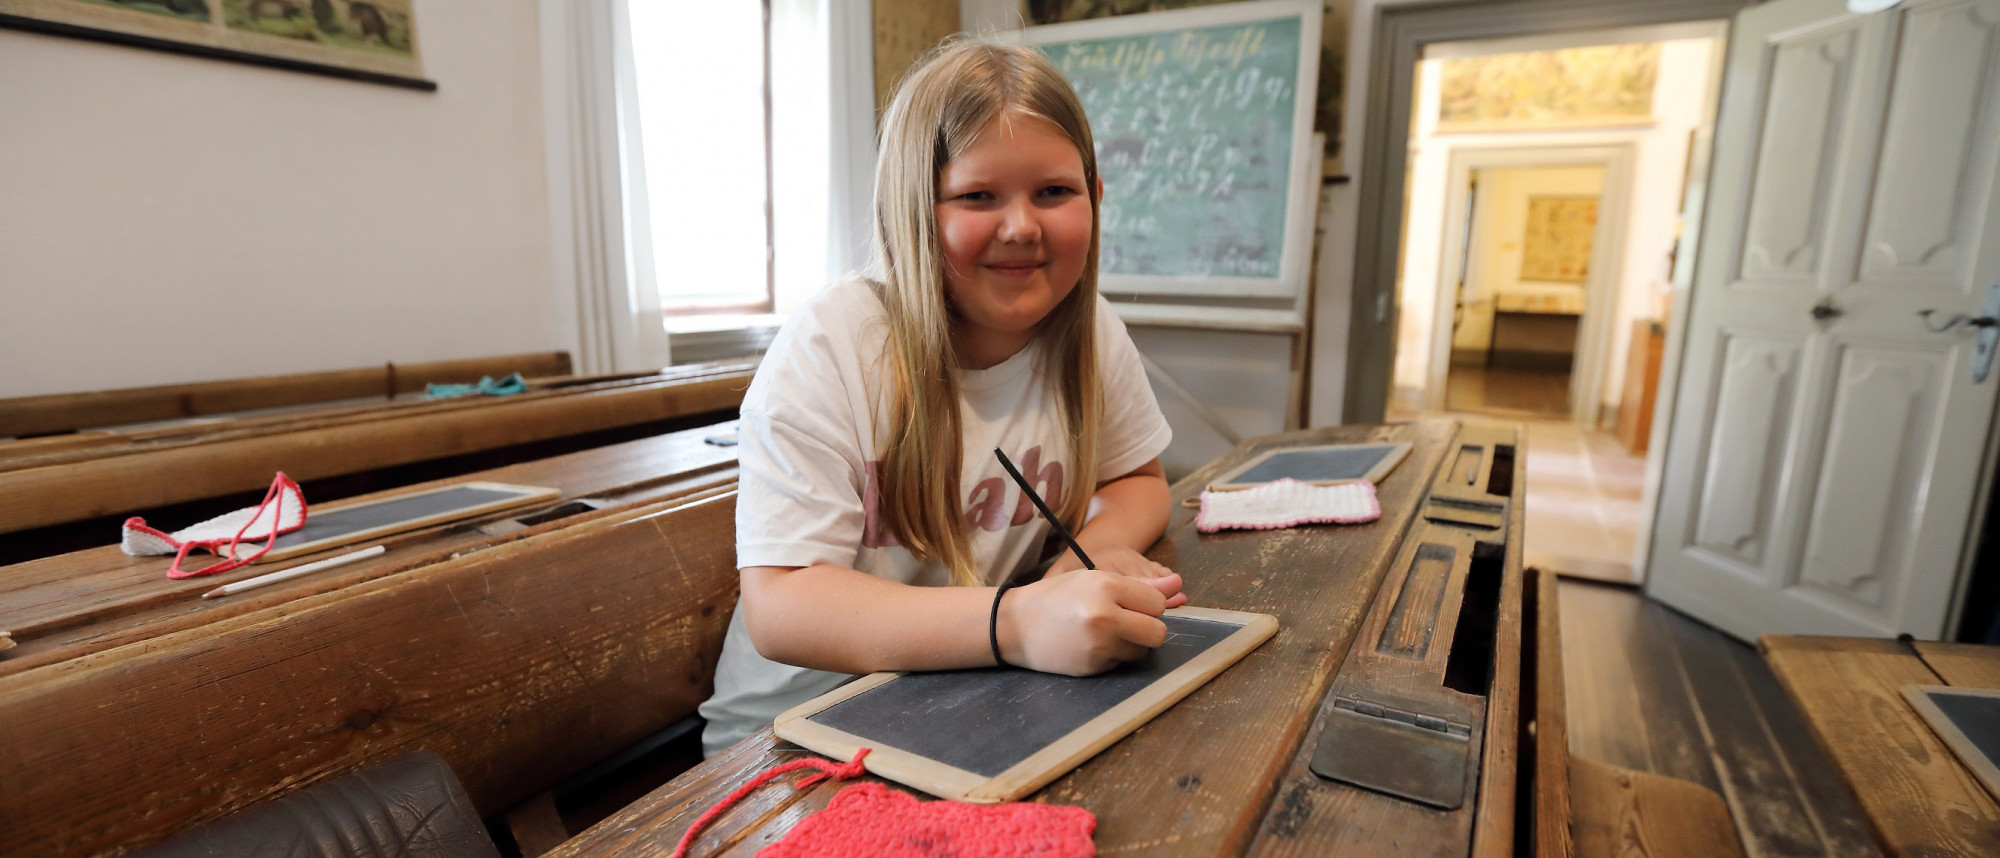 Ein Mädchen sitzt auf einer Schulbank in einem alten Klassenzimmer. Sie schreibt mit einem Griffel auf eine Schiefertafel.